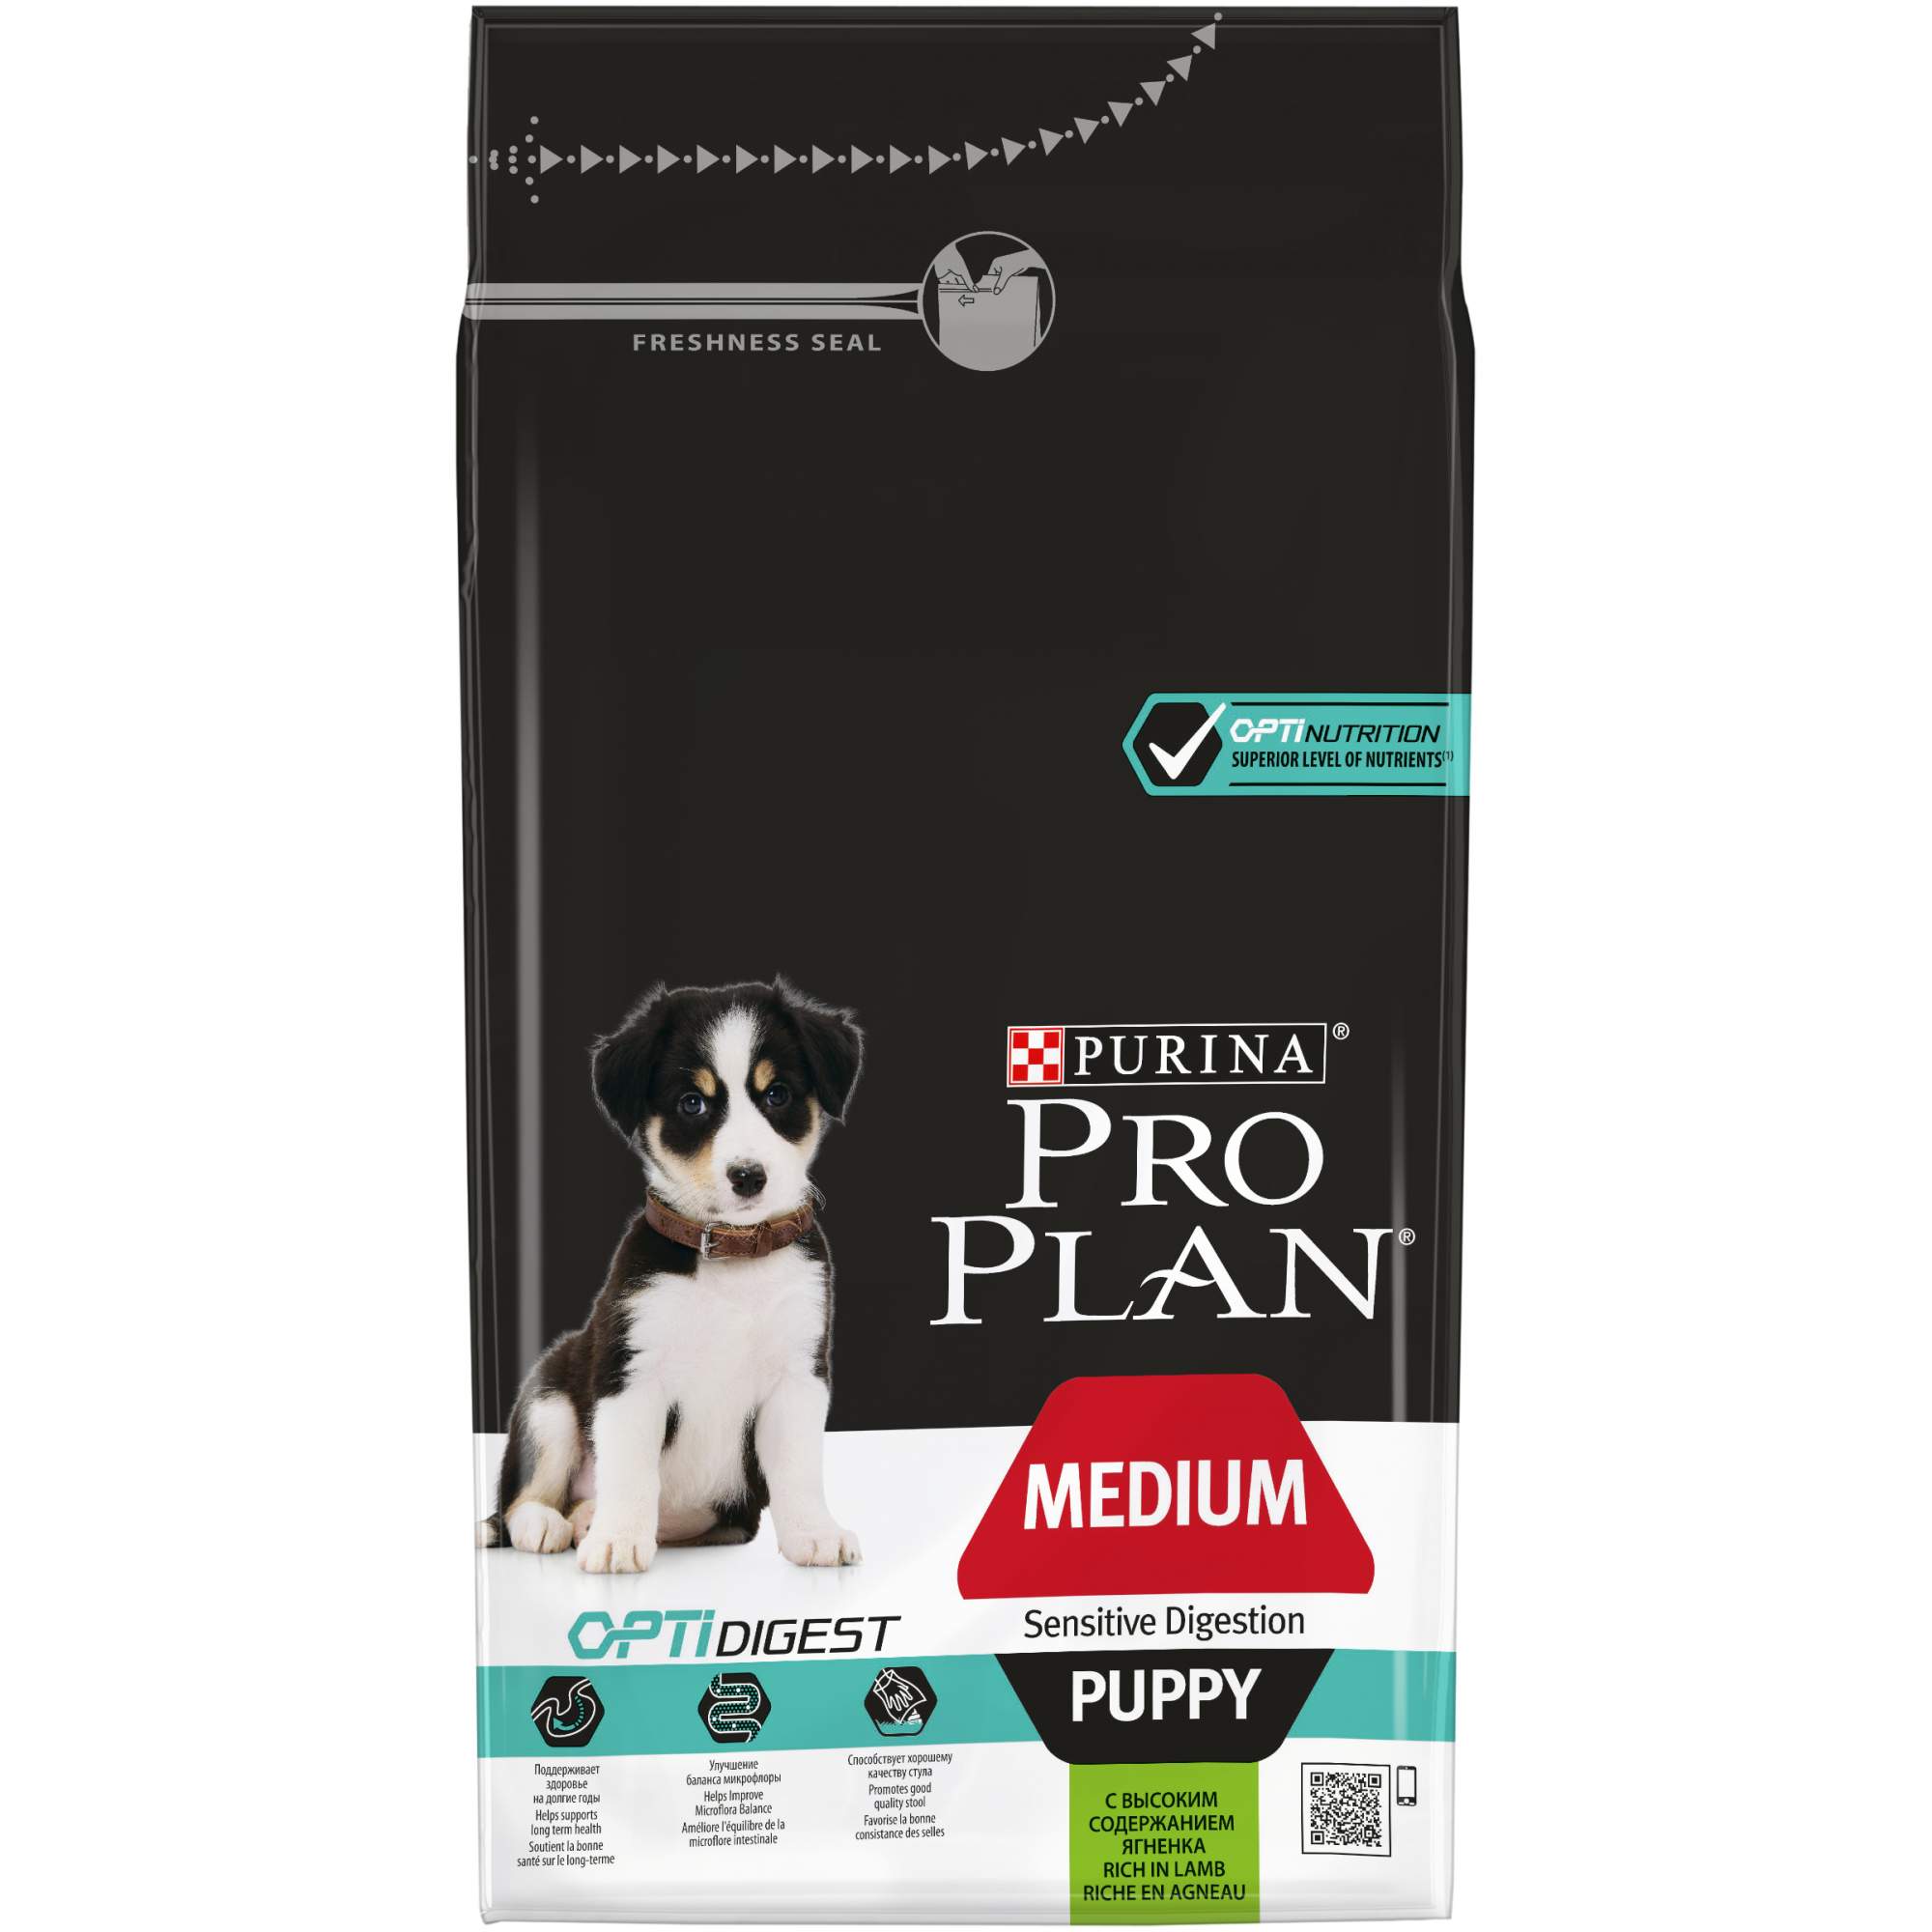 Сухой корм для щенков PRO PLAN OptiDigest Medium Puppy, для средних пород, ягненок, 1,5кг